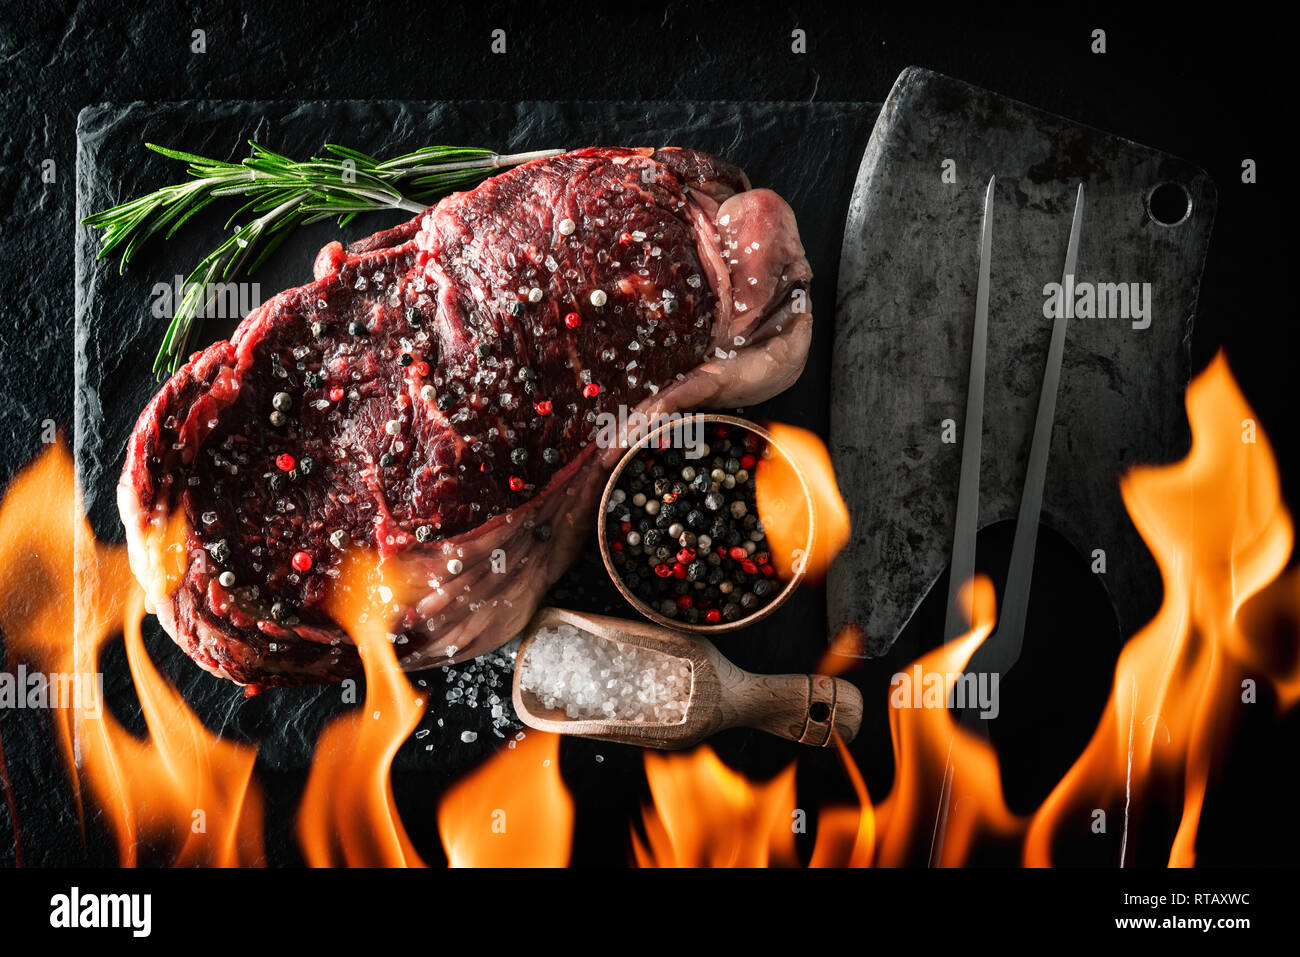 Le persillage Ribeye Steak sur plaque noire avec effet de flamme. Hacher la viande de boeuf Banque D'Images